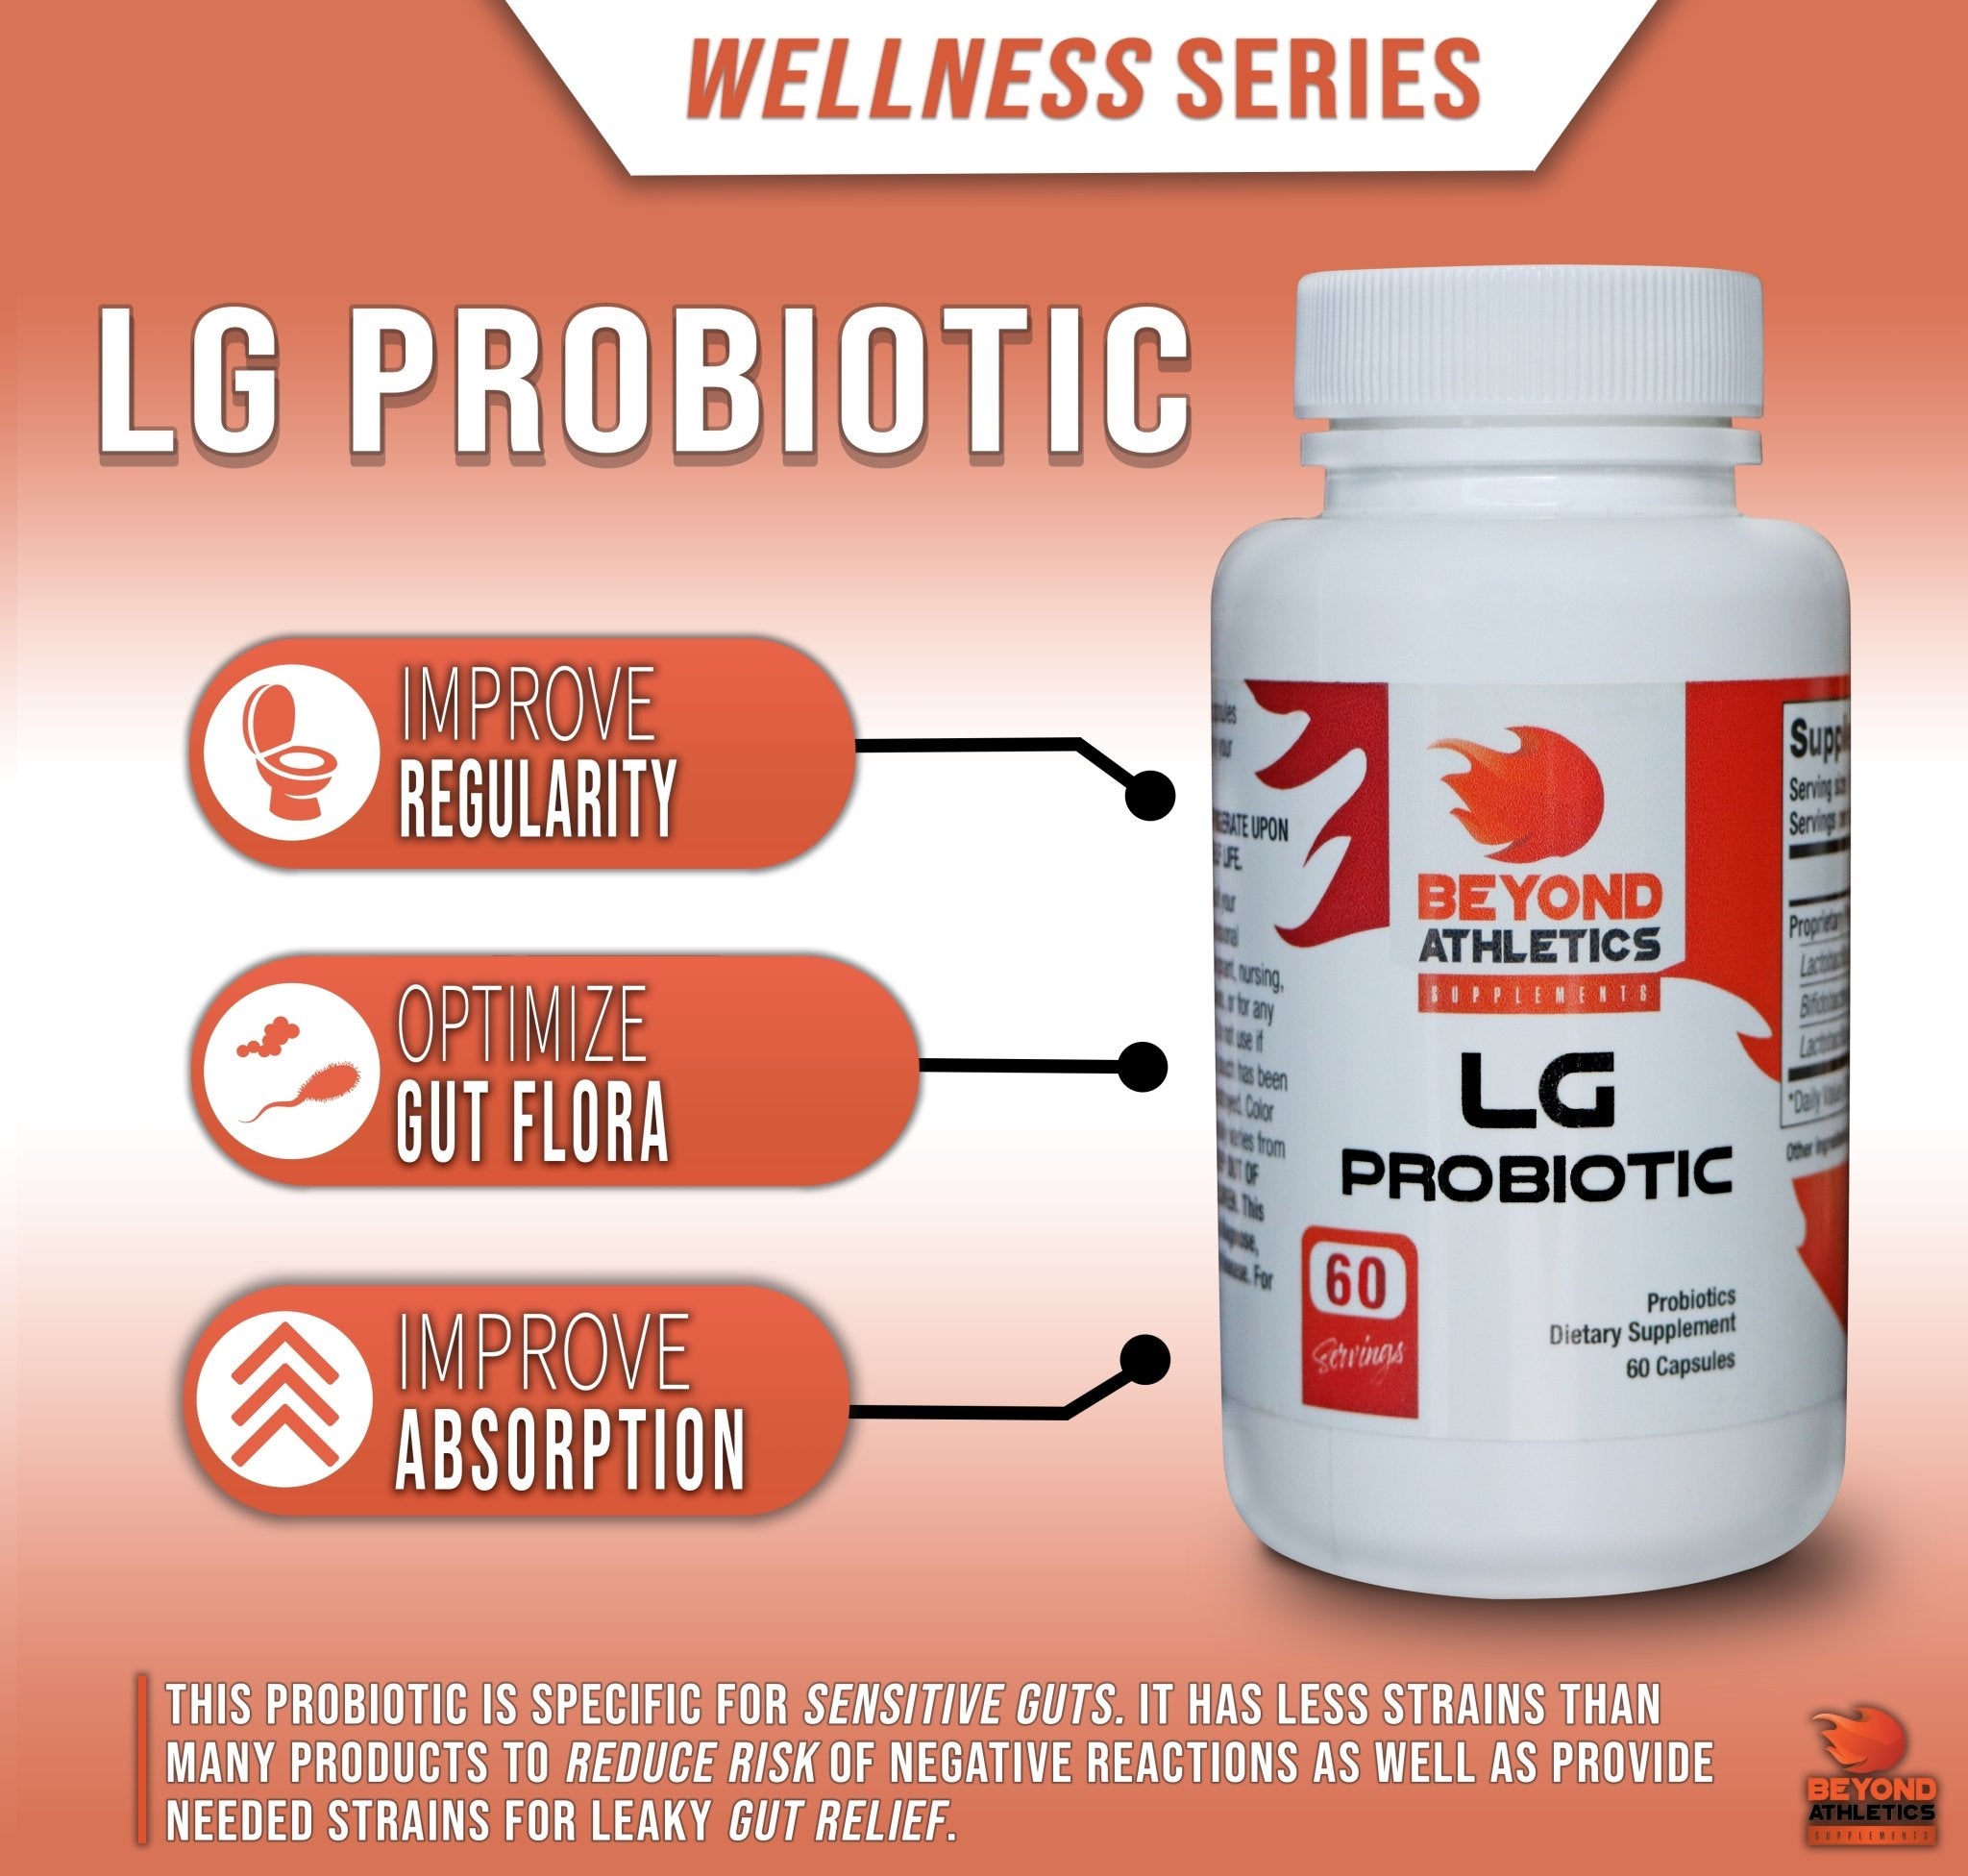 LG Probiotic